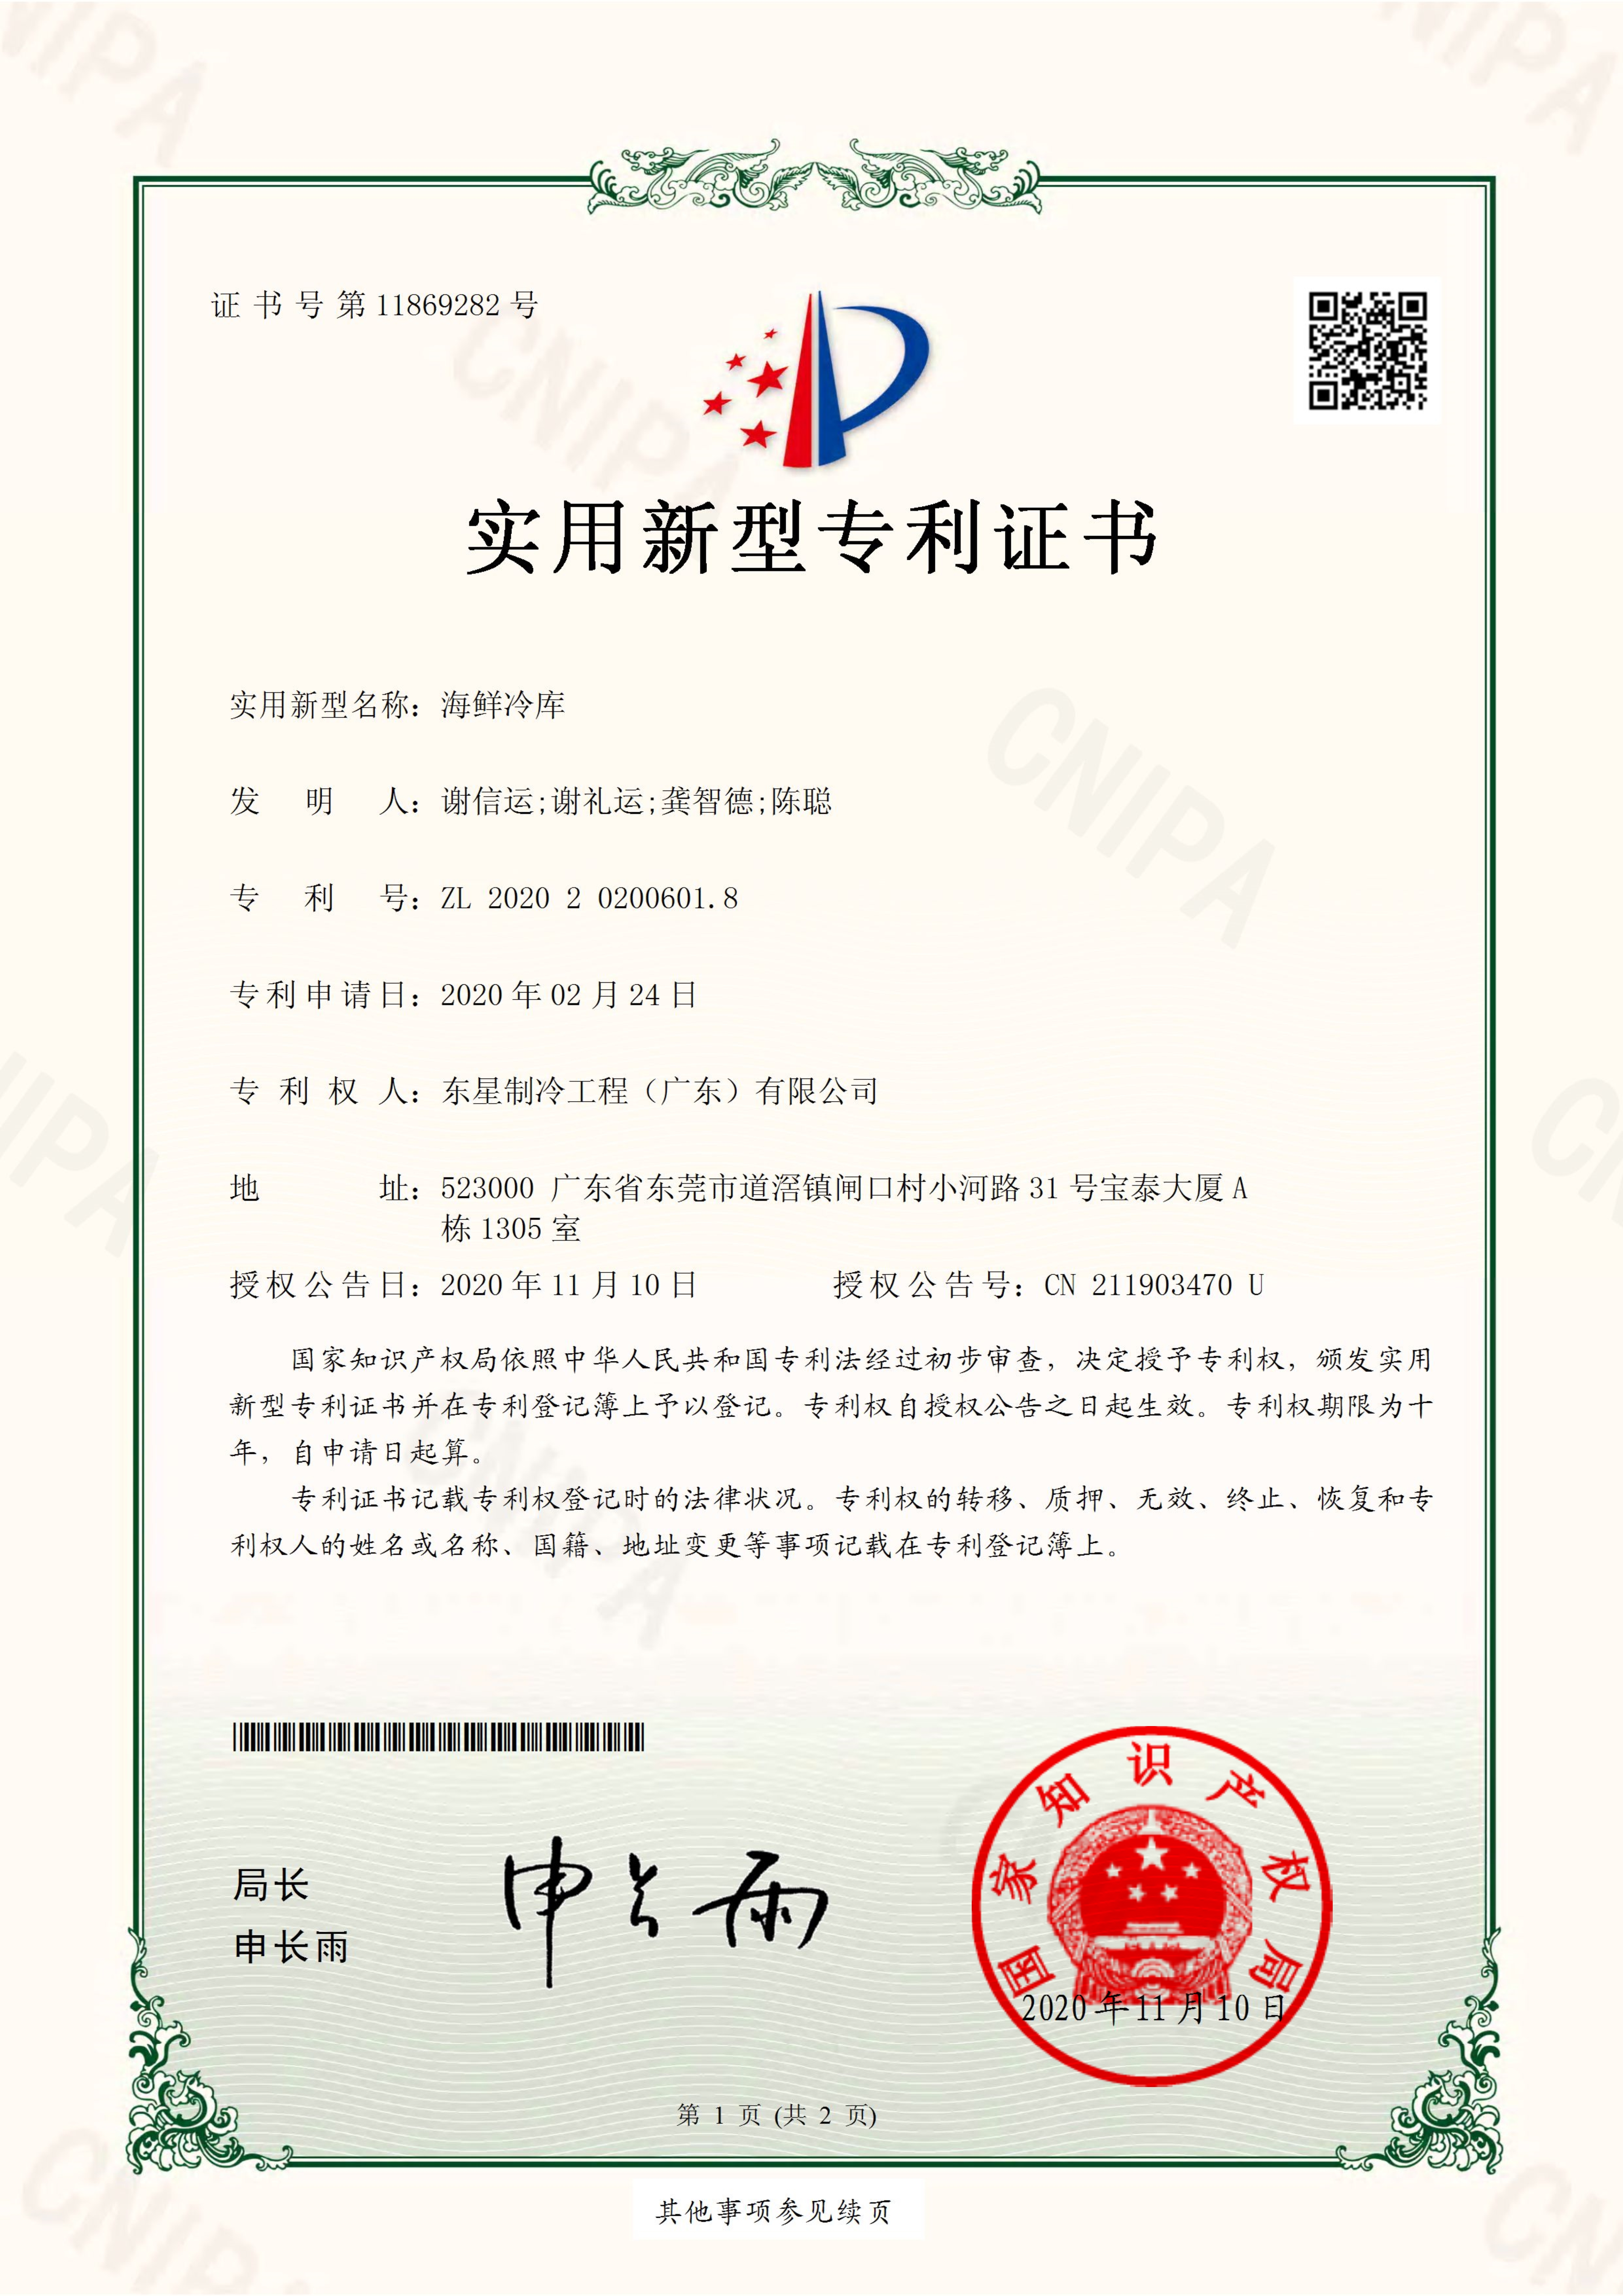 发明专利-海鲜球迷网平台(中国)股份有限公司